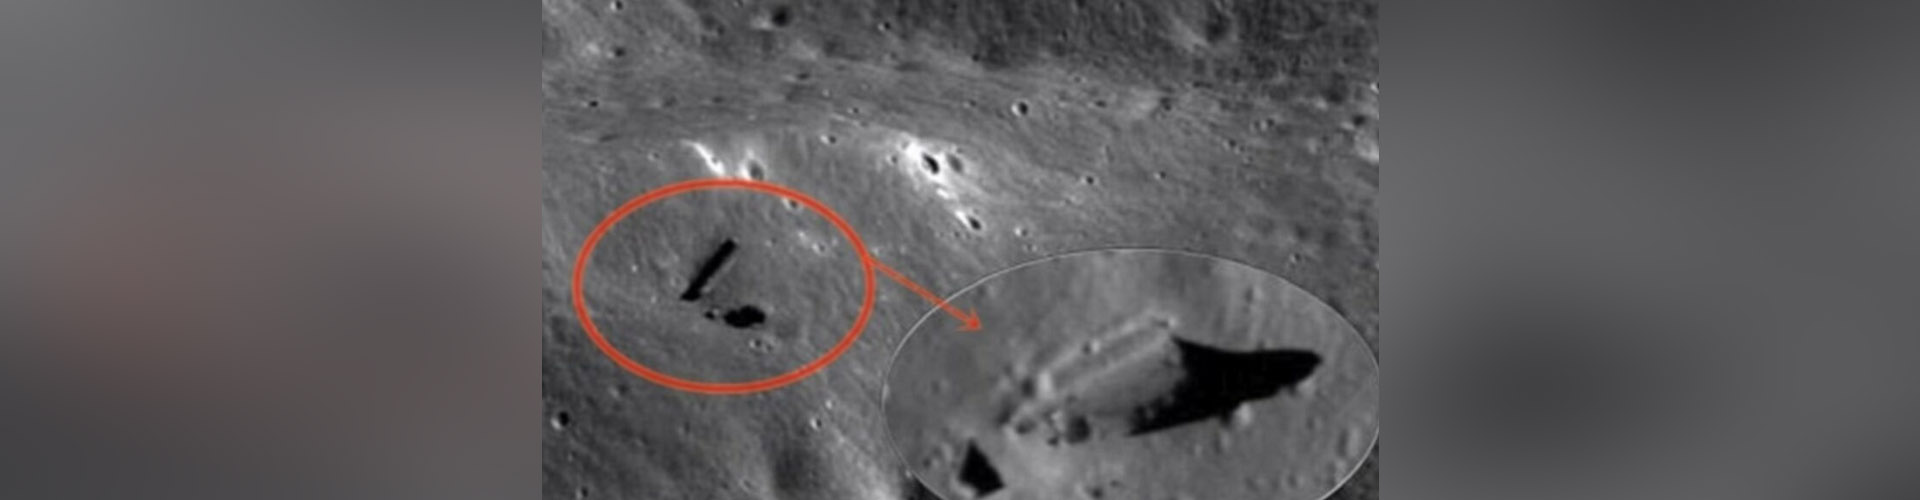 (VIDEO) “La luna no es nuestra”: OVNIs y estructuras captadas por NASA